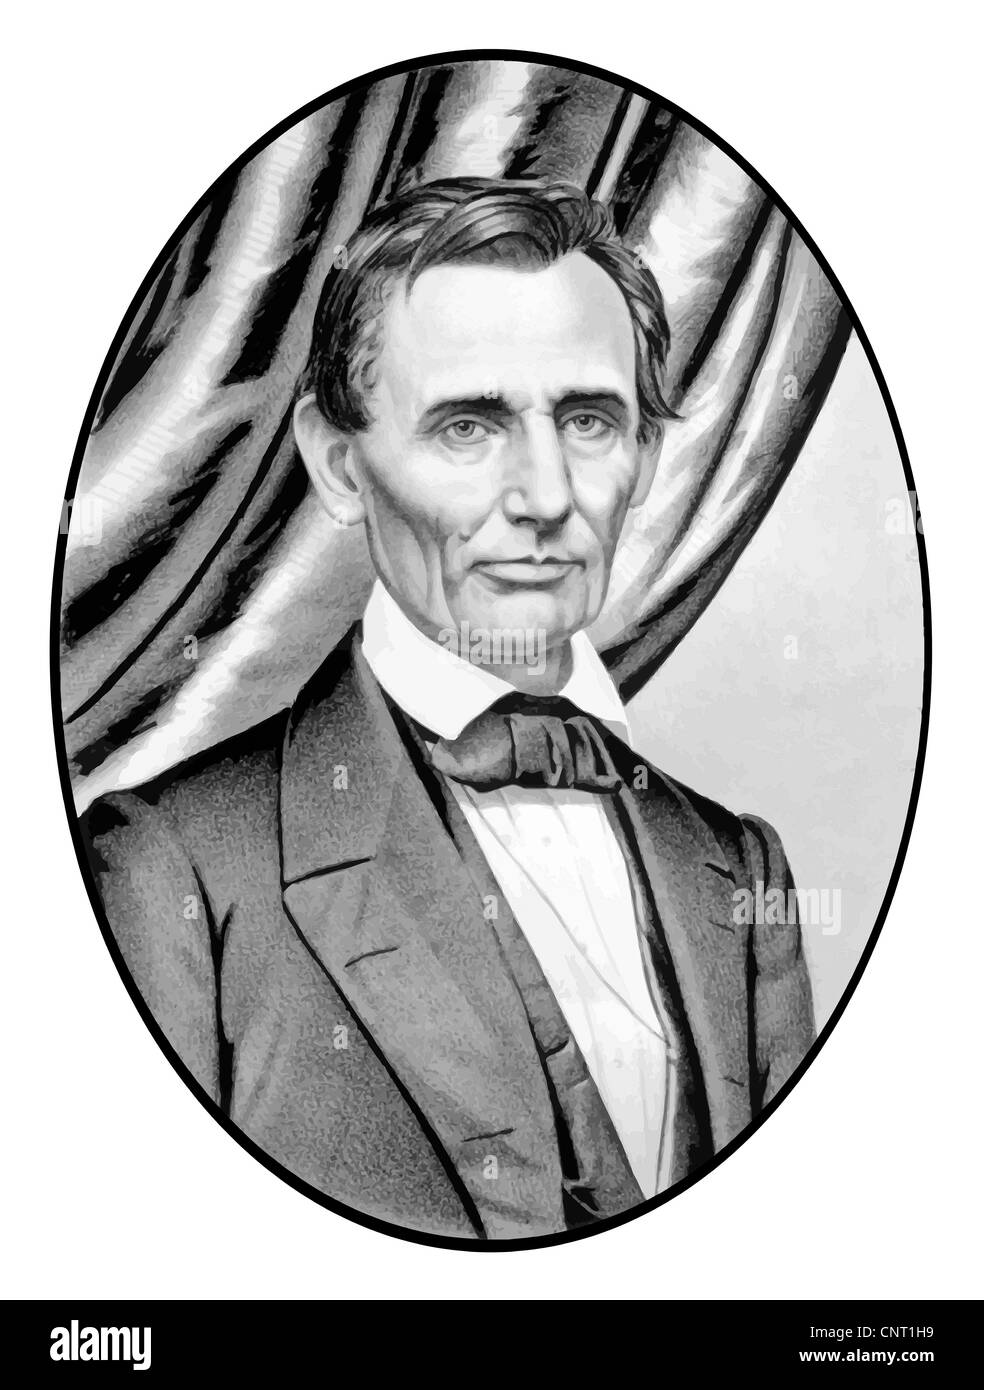 Digital restauriert Vektor Porträt von Abe Lincoln als glatt rasiert Kandidat für die Präsidentschaft der Vereinigten Staaten von Amerika. Stockfoto